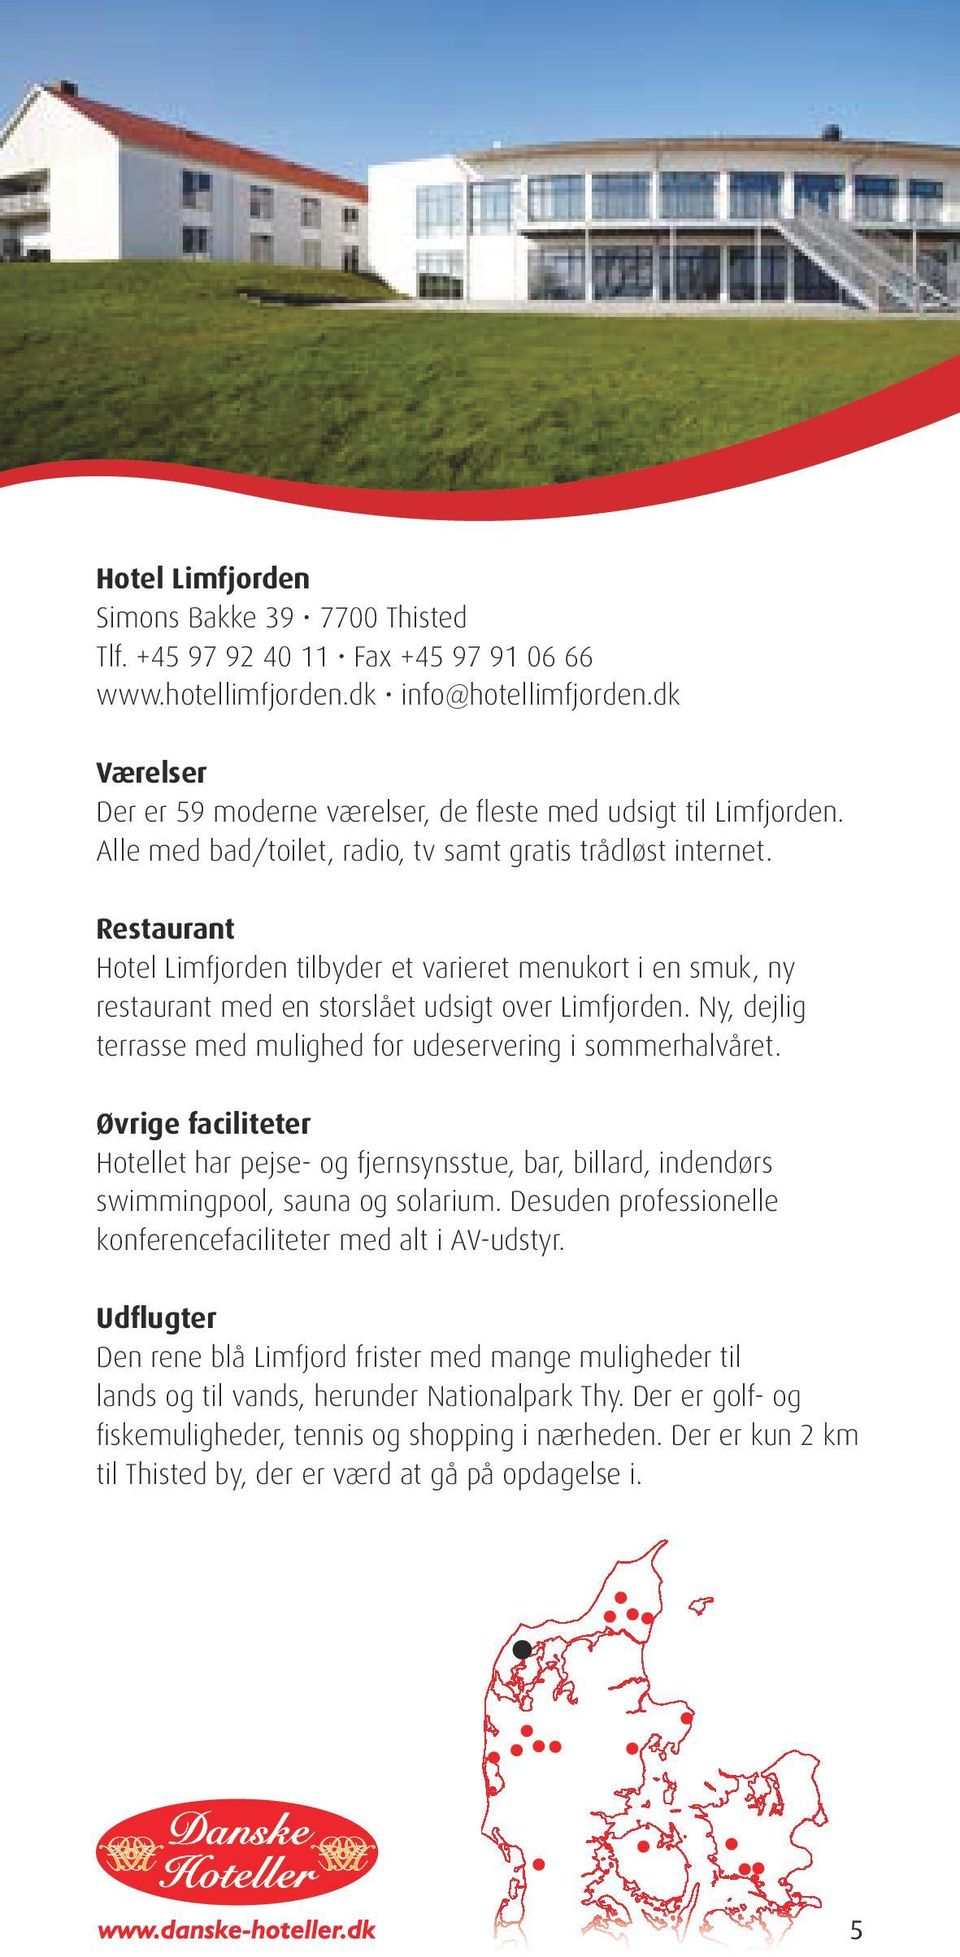 Restaurant Hotel Limfjorden tilbyder et varieret menukort i en smuk, ny restaurant med en storslået udsigt over Limfjorden. Ny, dejlig terrasse med mulighed for udeservering i sommerhalvåret.